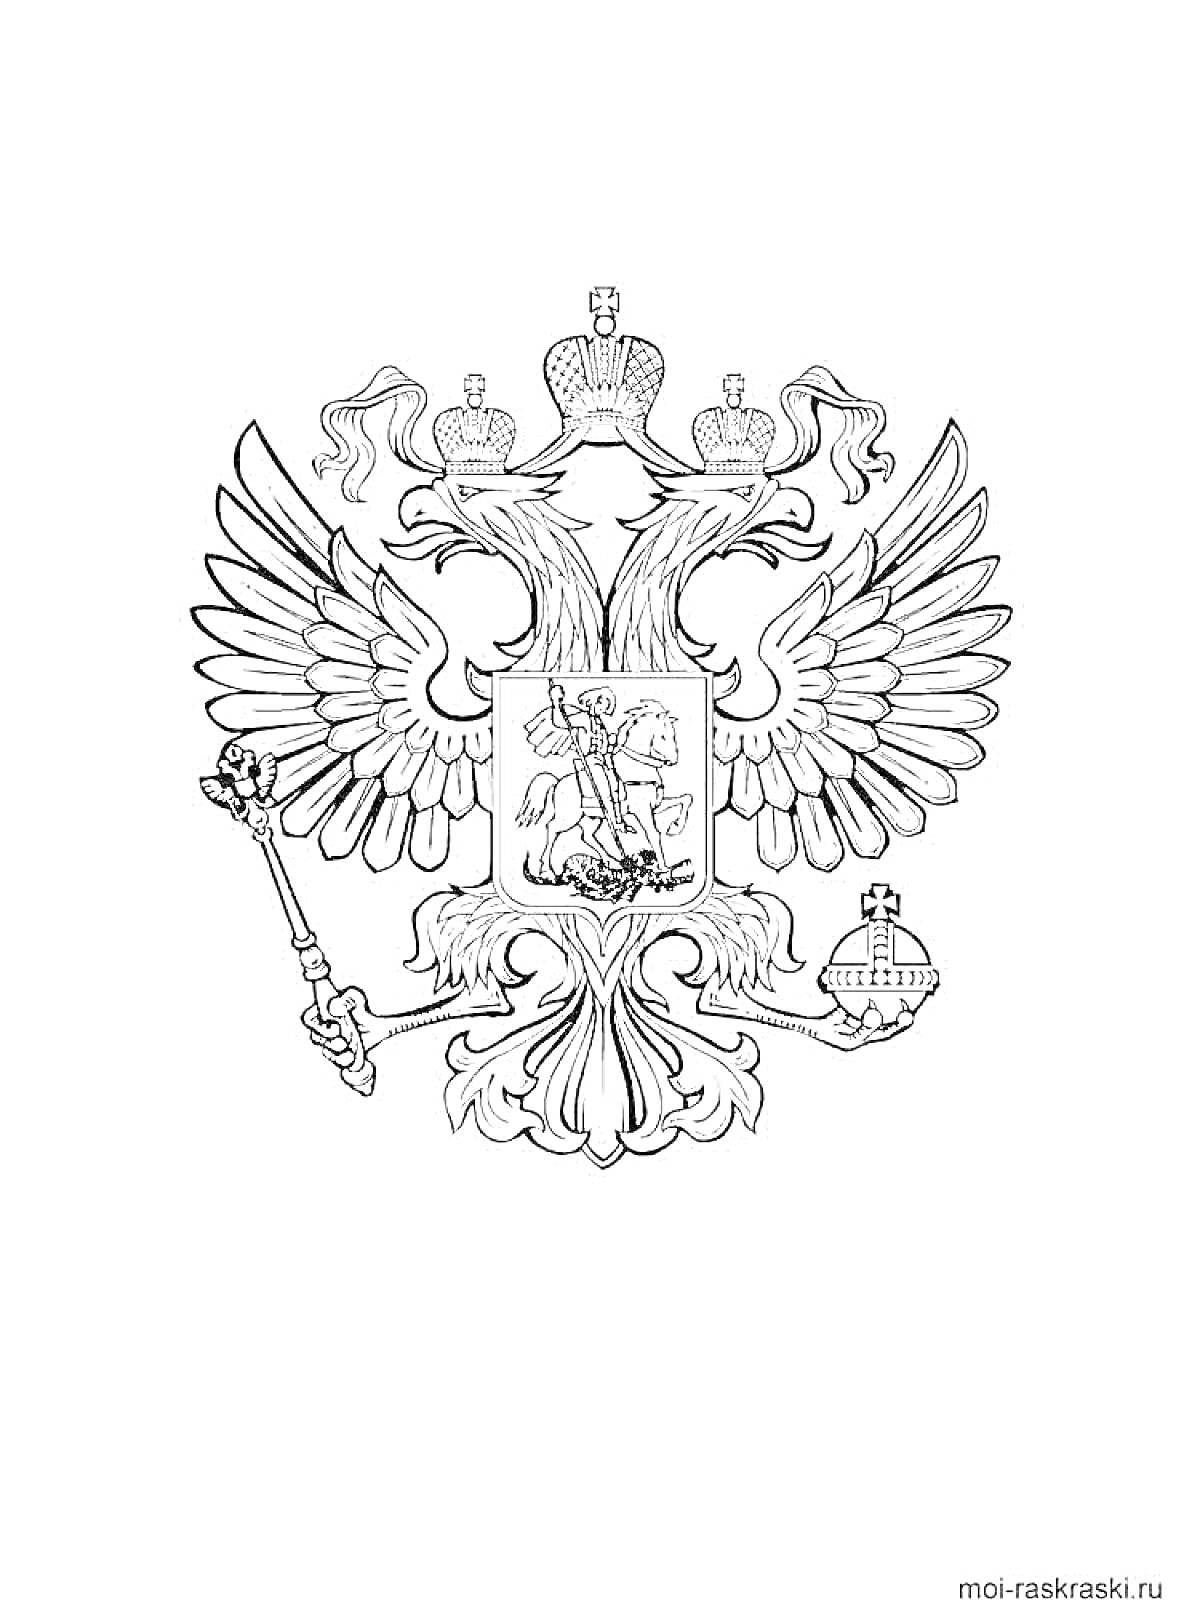 Герб с двухглавым орлом, тремя коронами, жезлом, державой и всадником с копьем